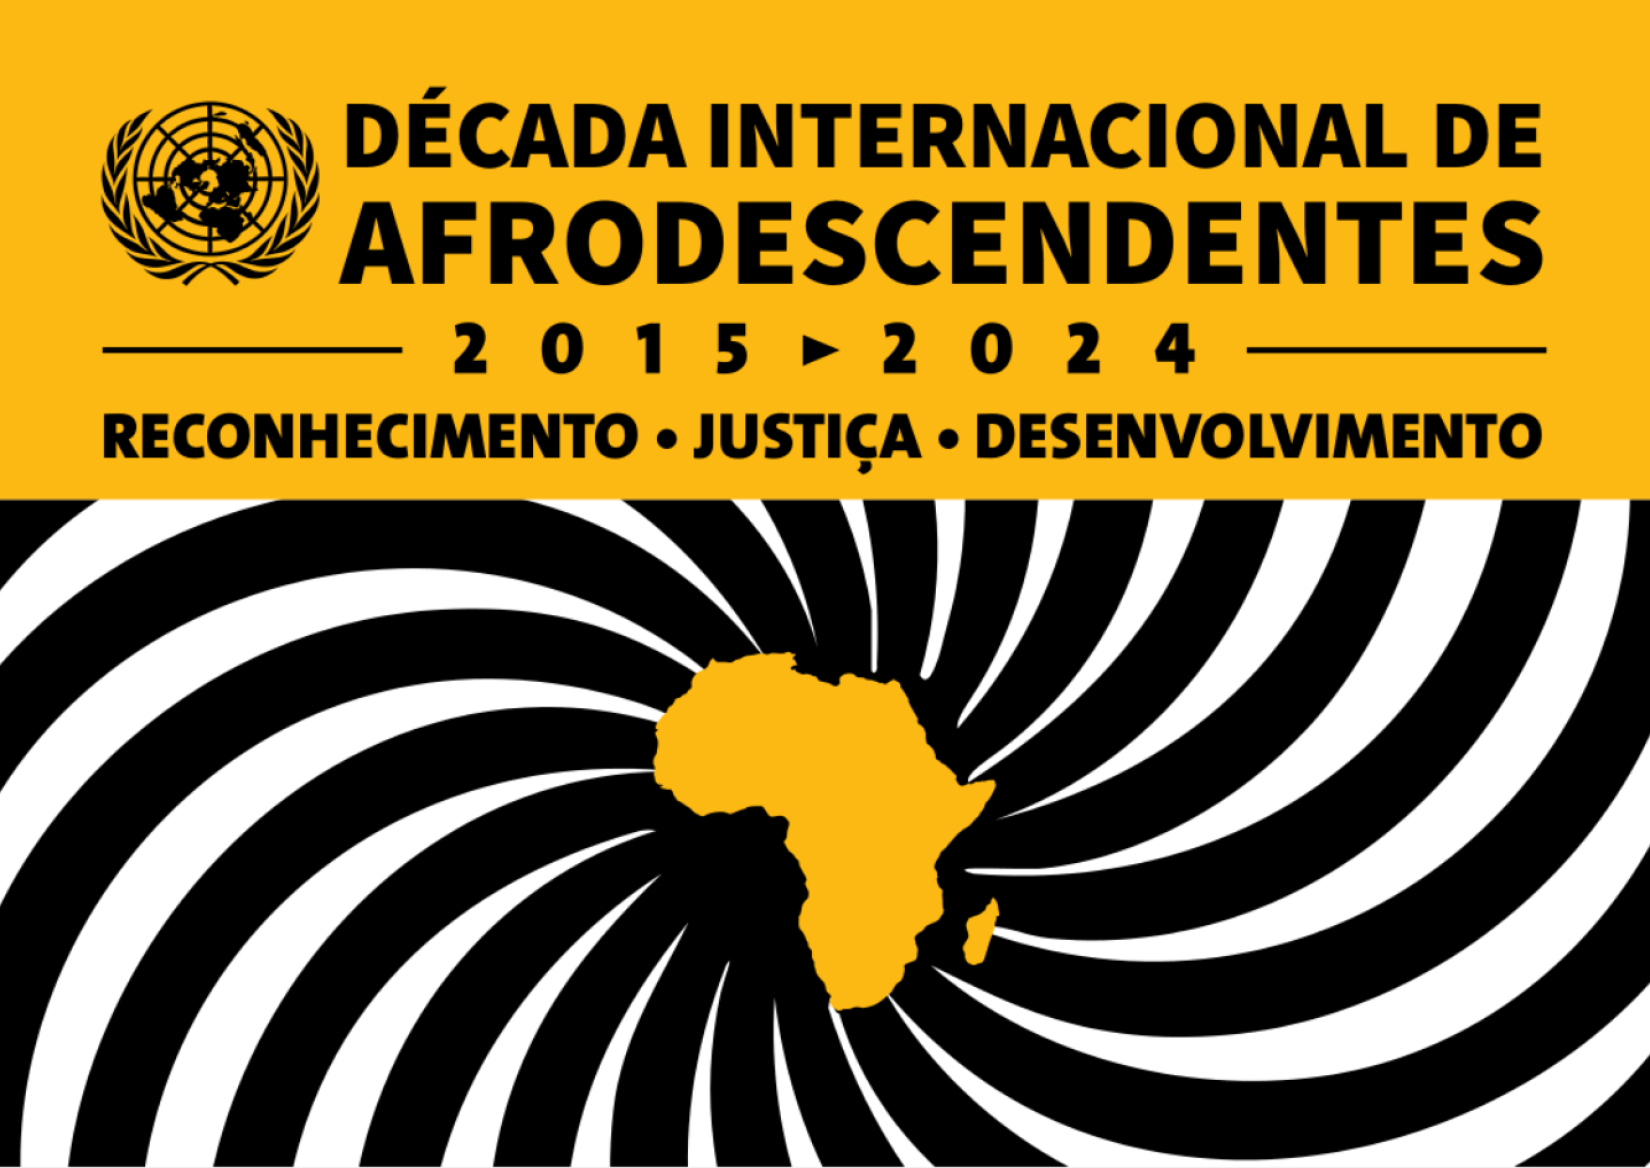 ONU Brasil lança livreto sobre Década Internacional de Afrodescendentes